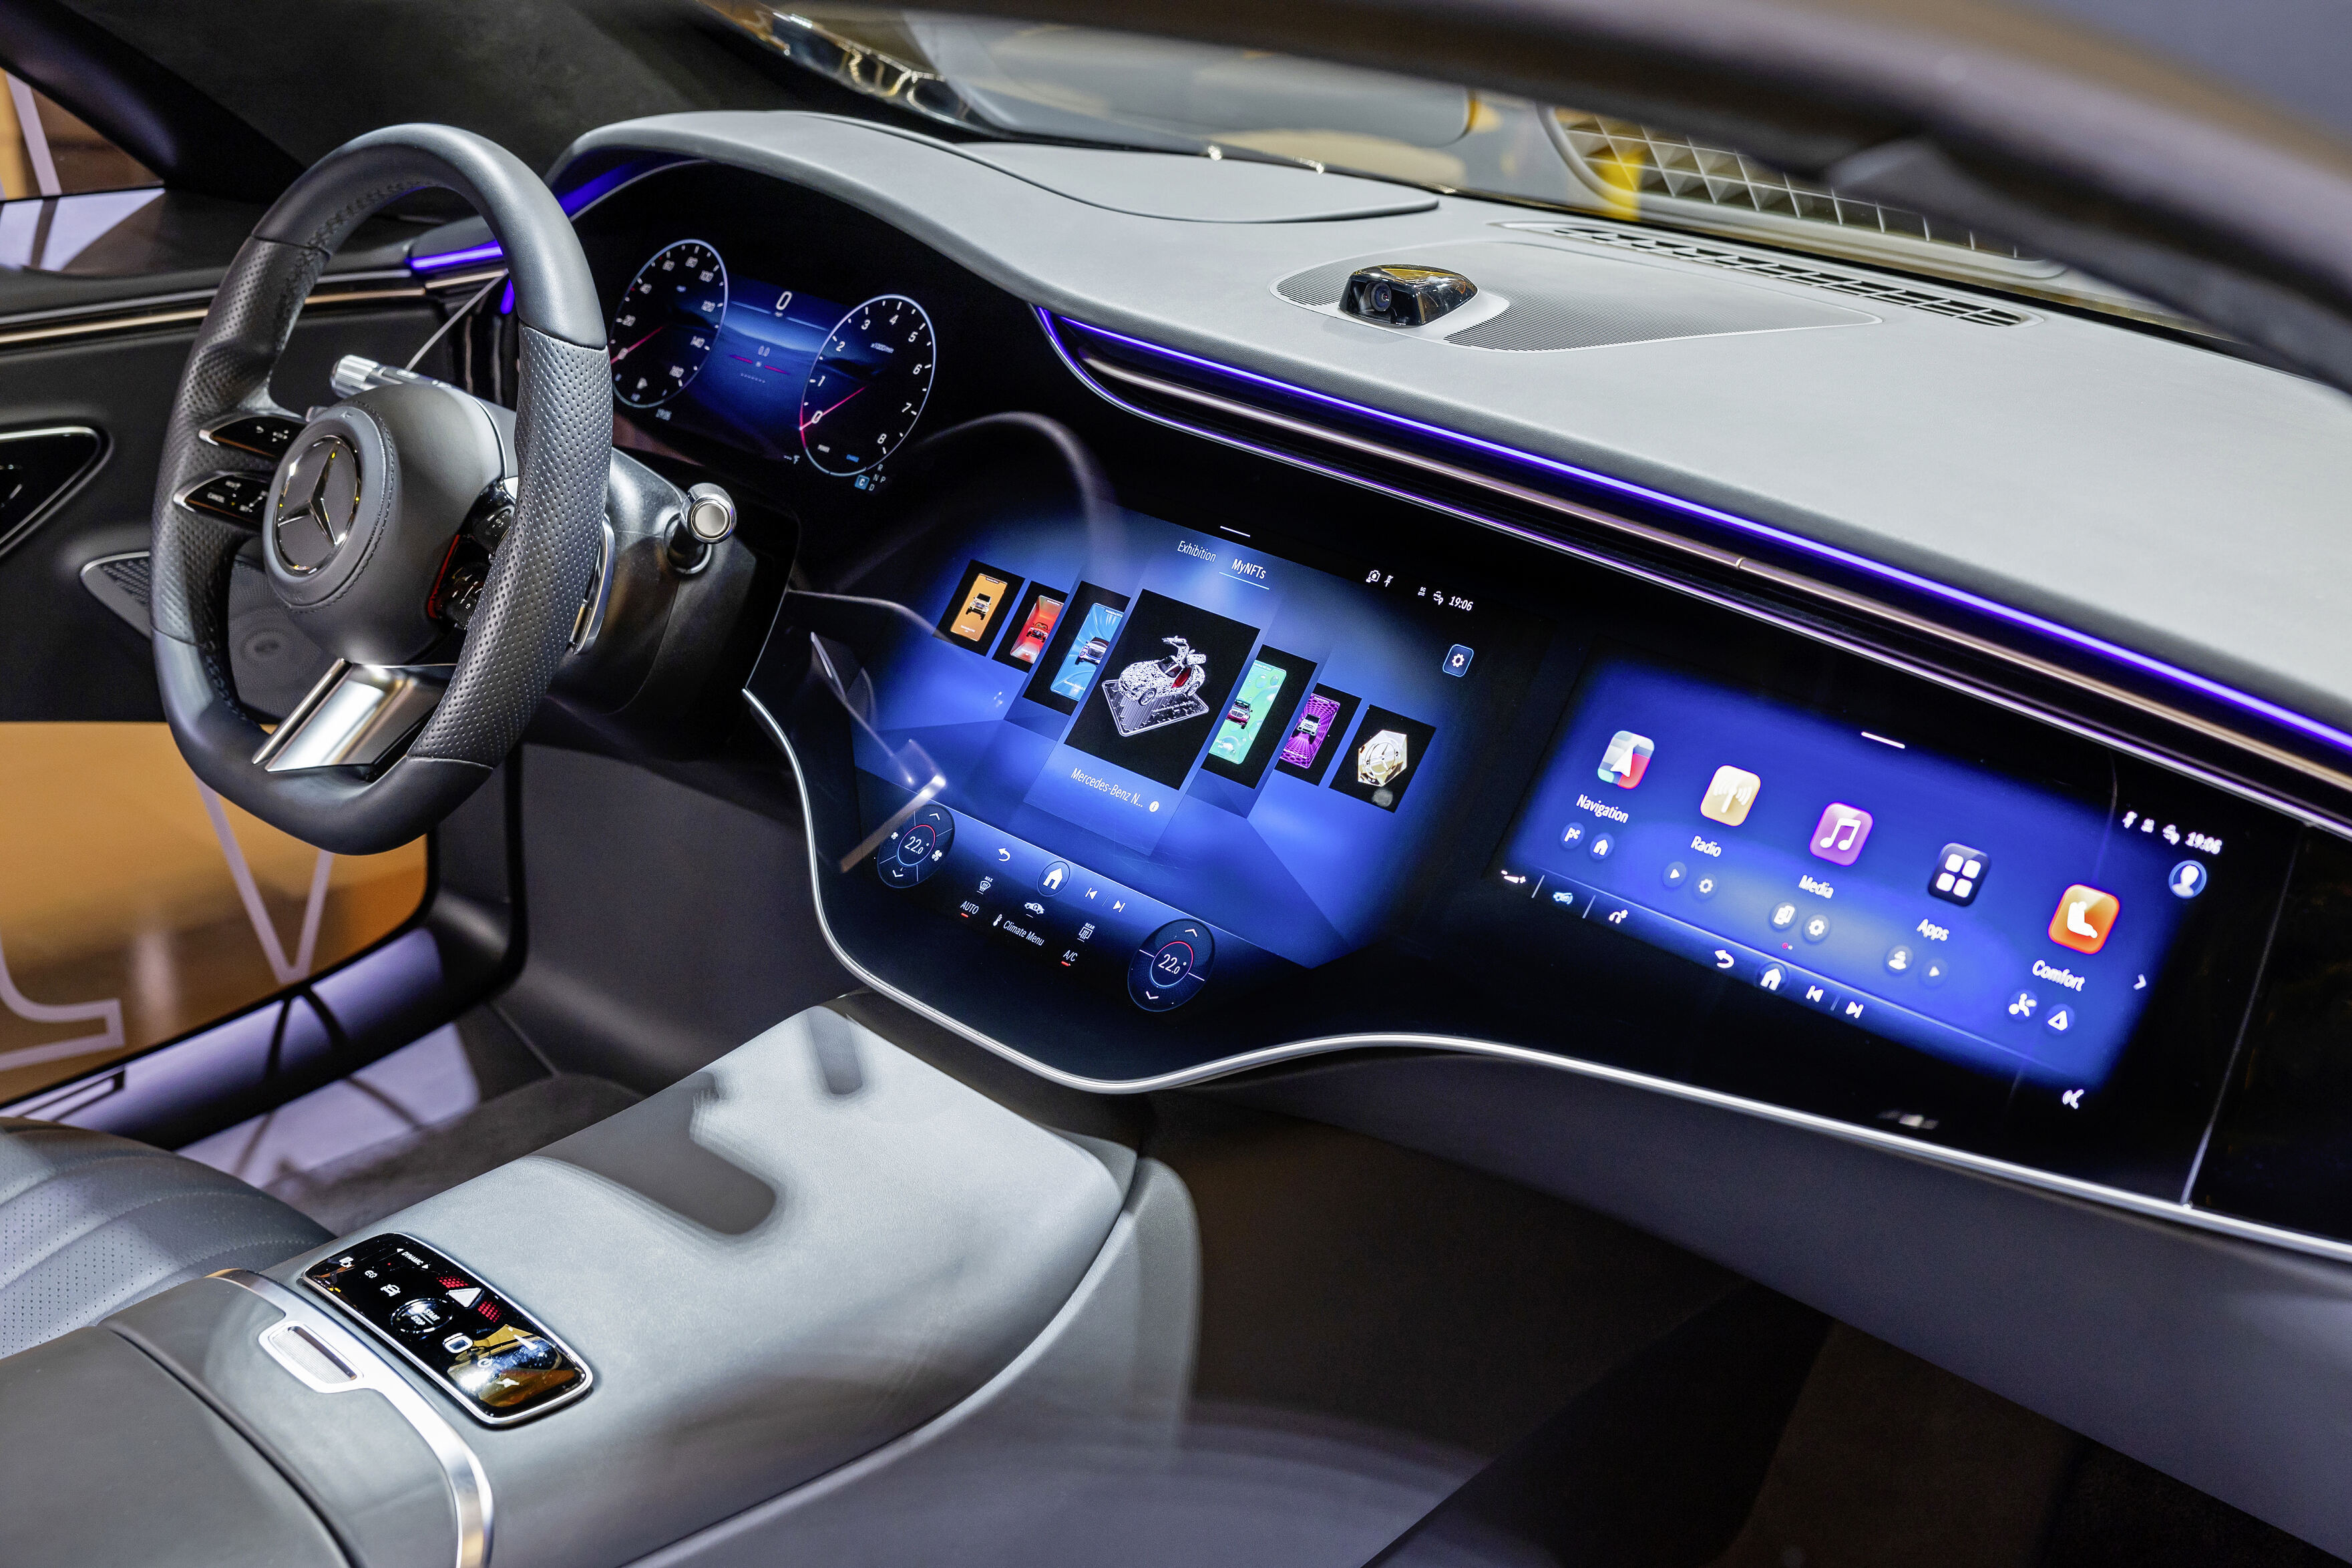 Mercedes Benz läutet eine neue Ära der Benutzeroberfläche ein mit menschenähnlichem virtuellen Assistenten auf Basis generativer KI 3500x2333